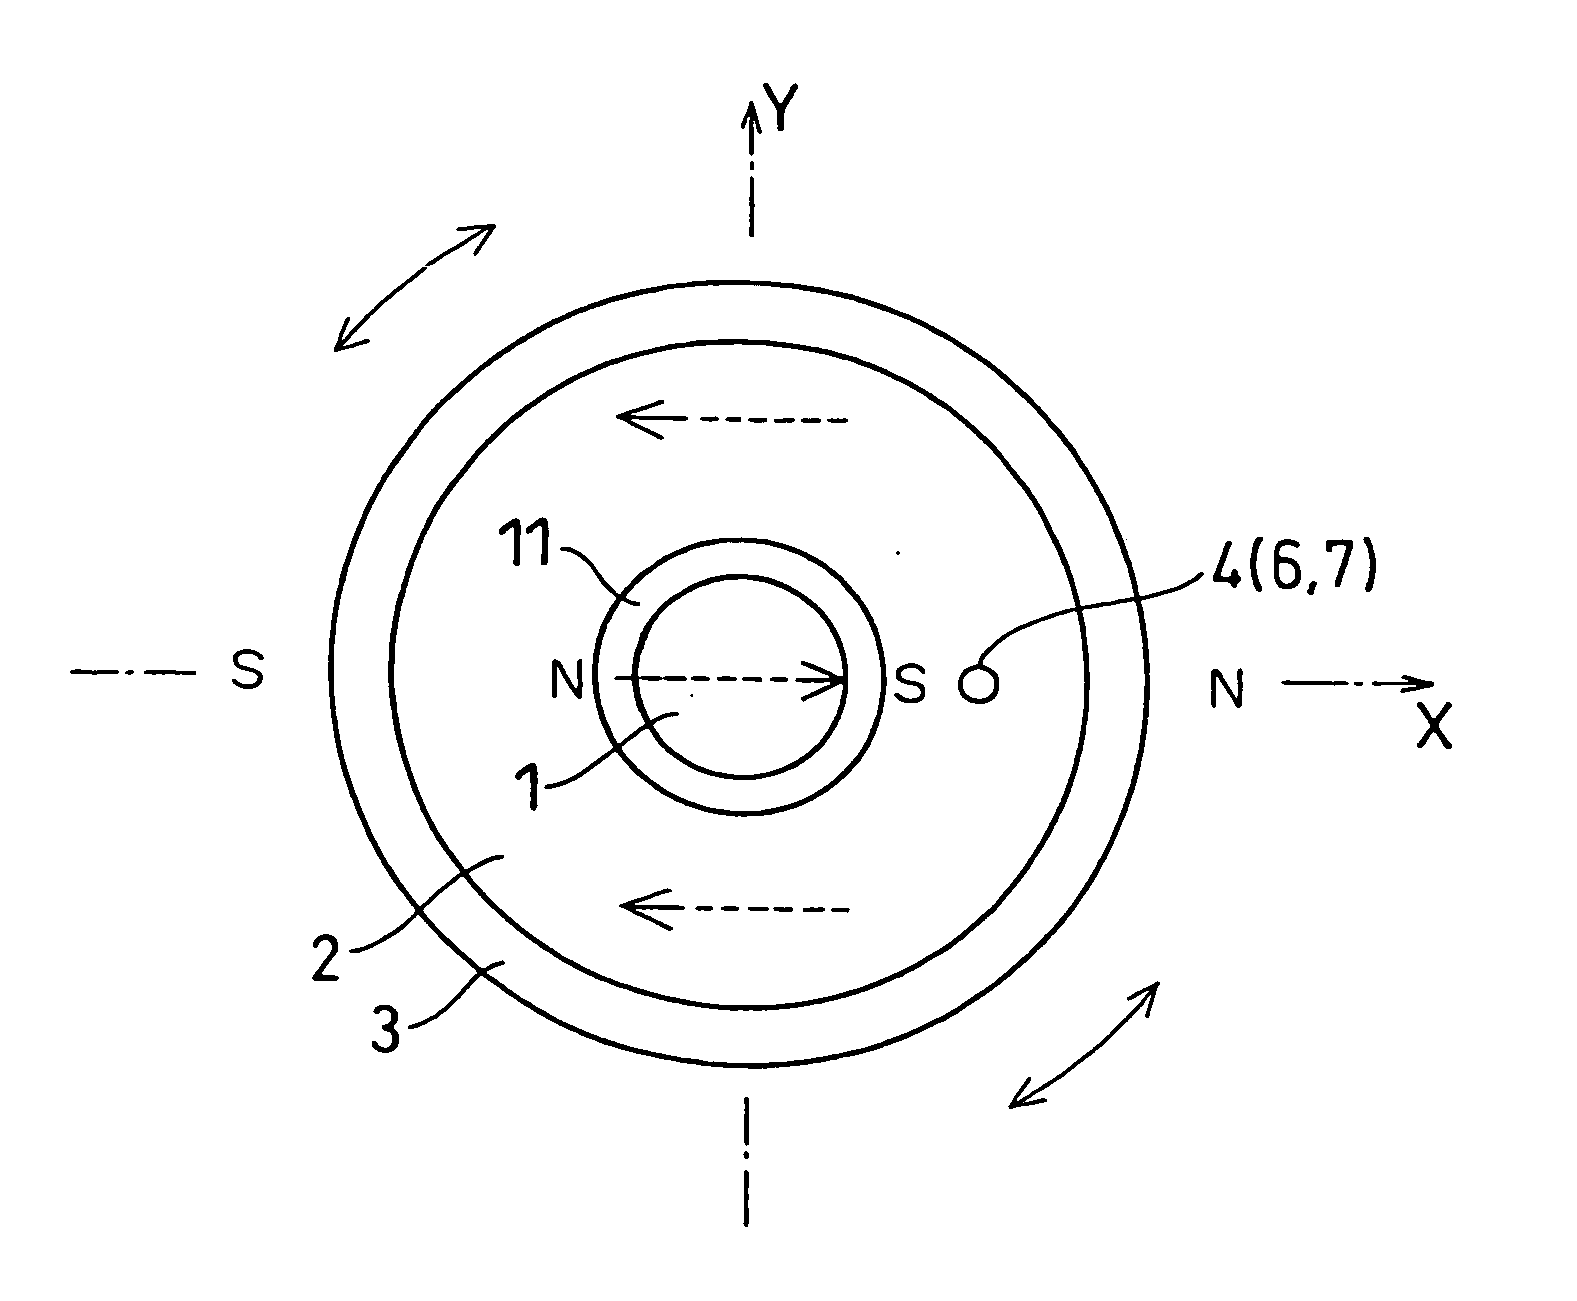 Rotation angle detector